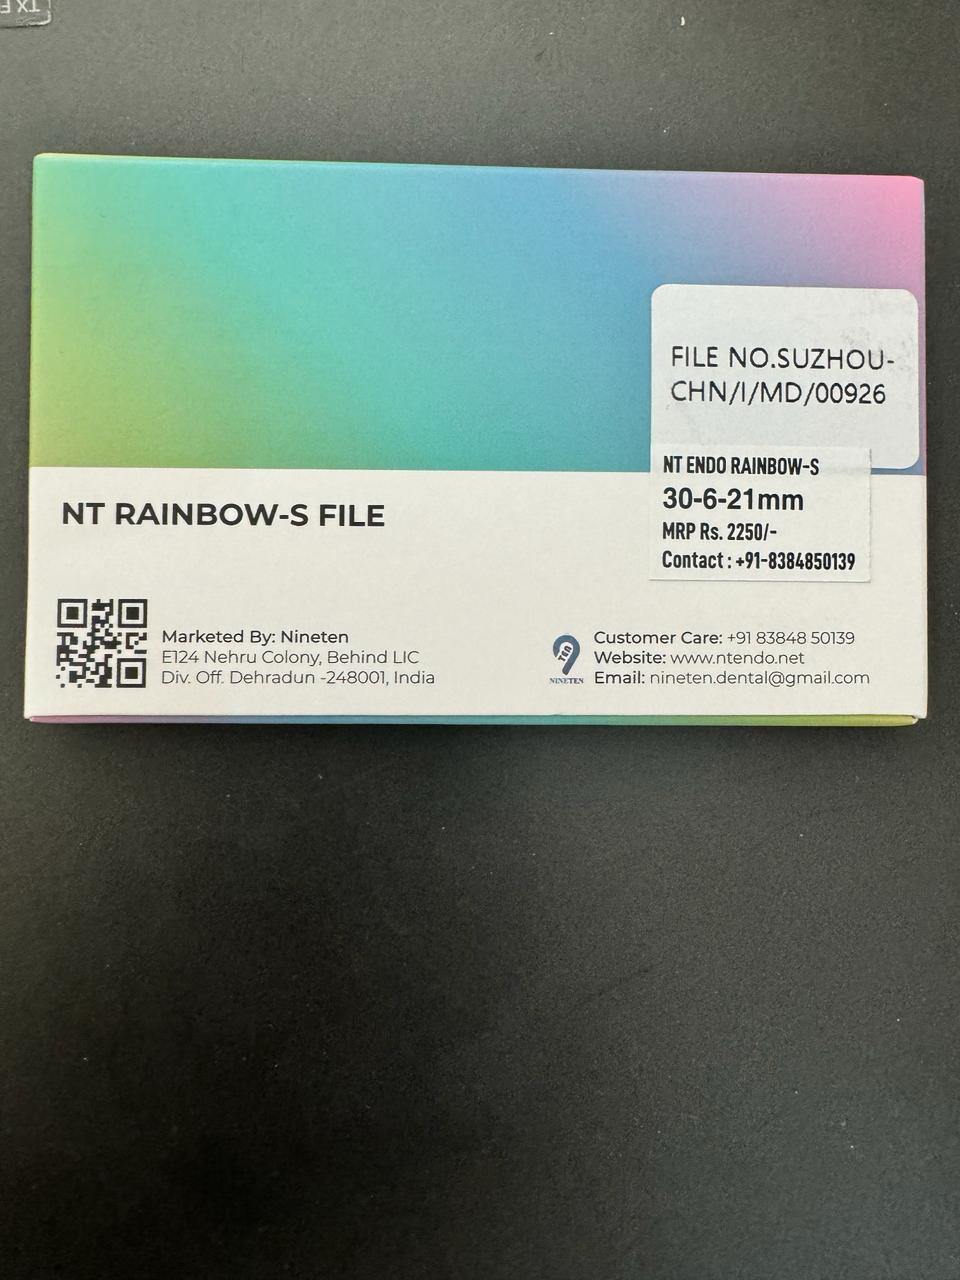 NT RAINBOW-S FILE 30-6-21MM